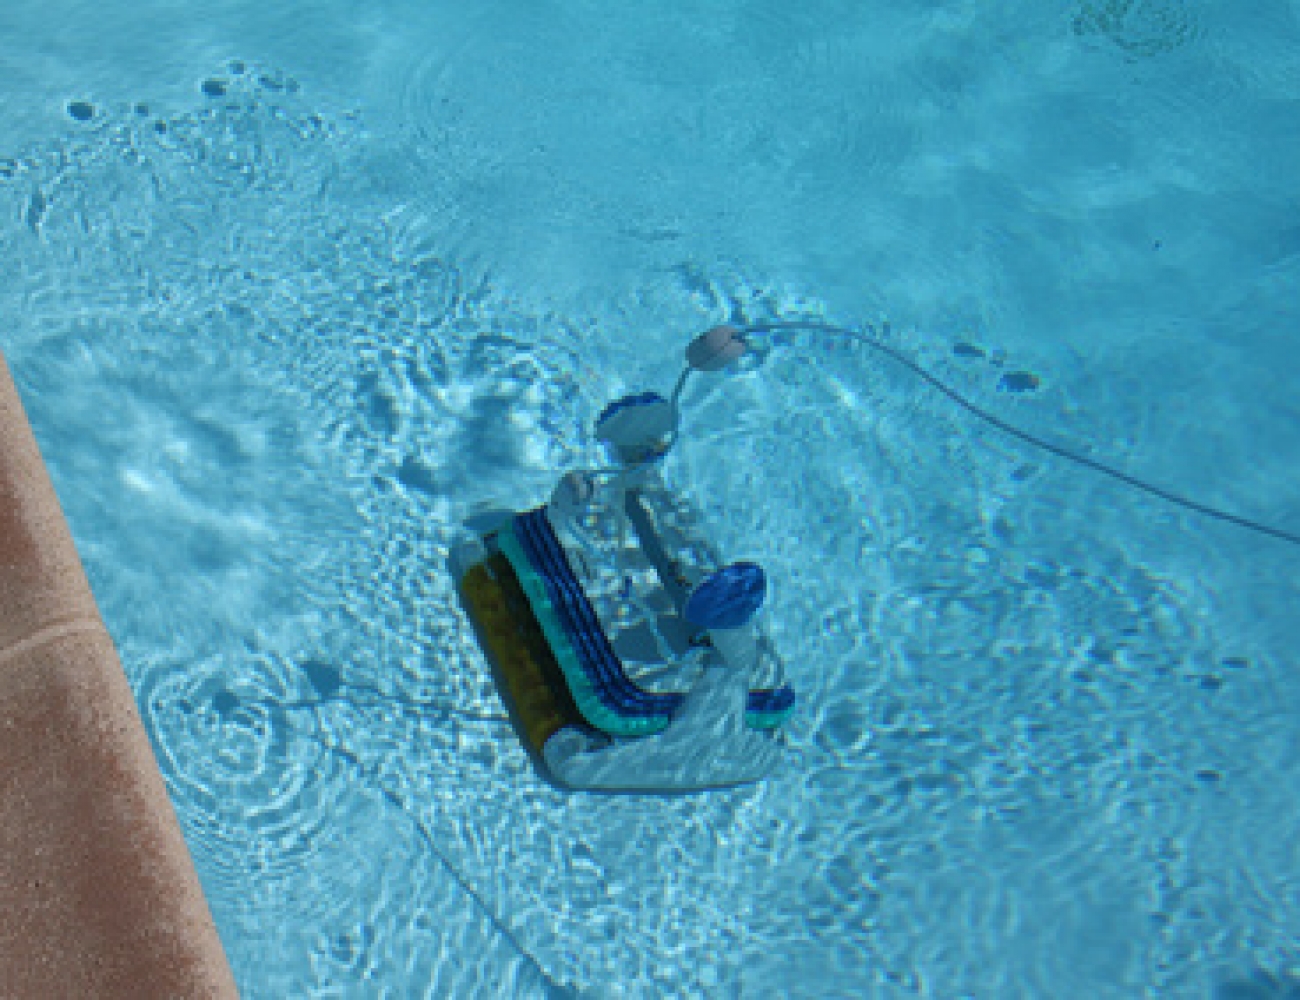 Les robots de piscine : aspiration et nettoyage automatique de votre piscine